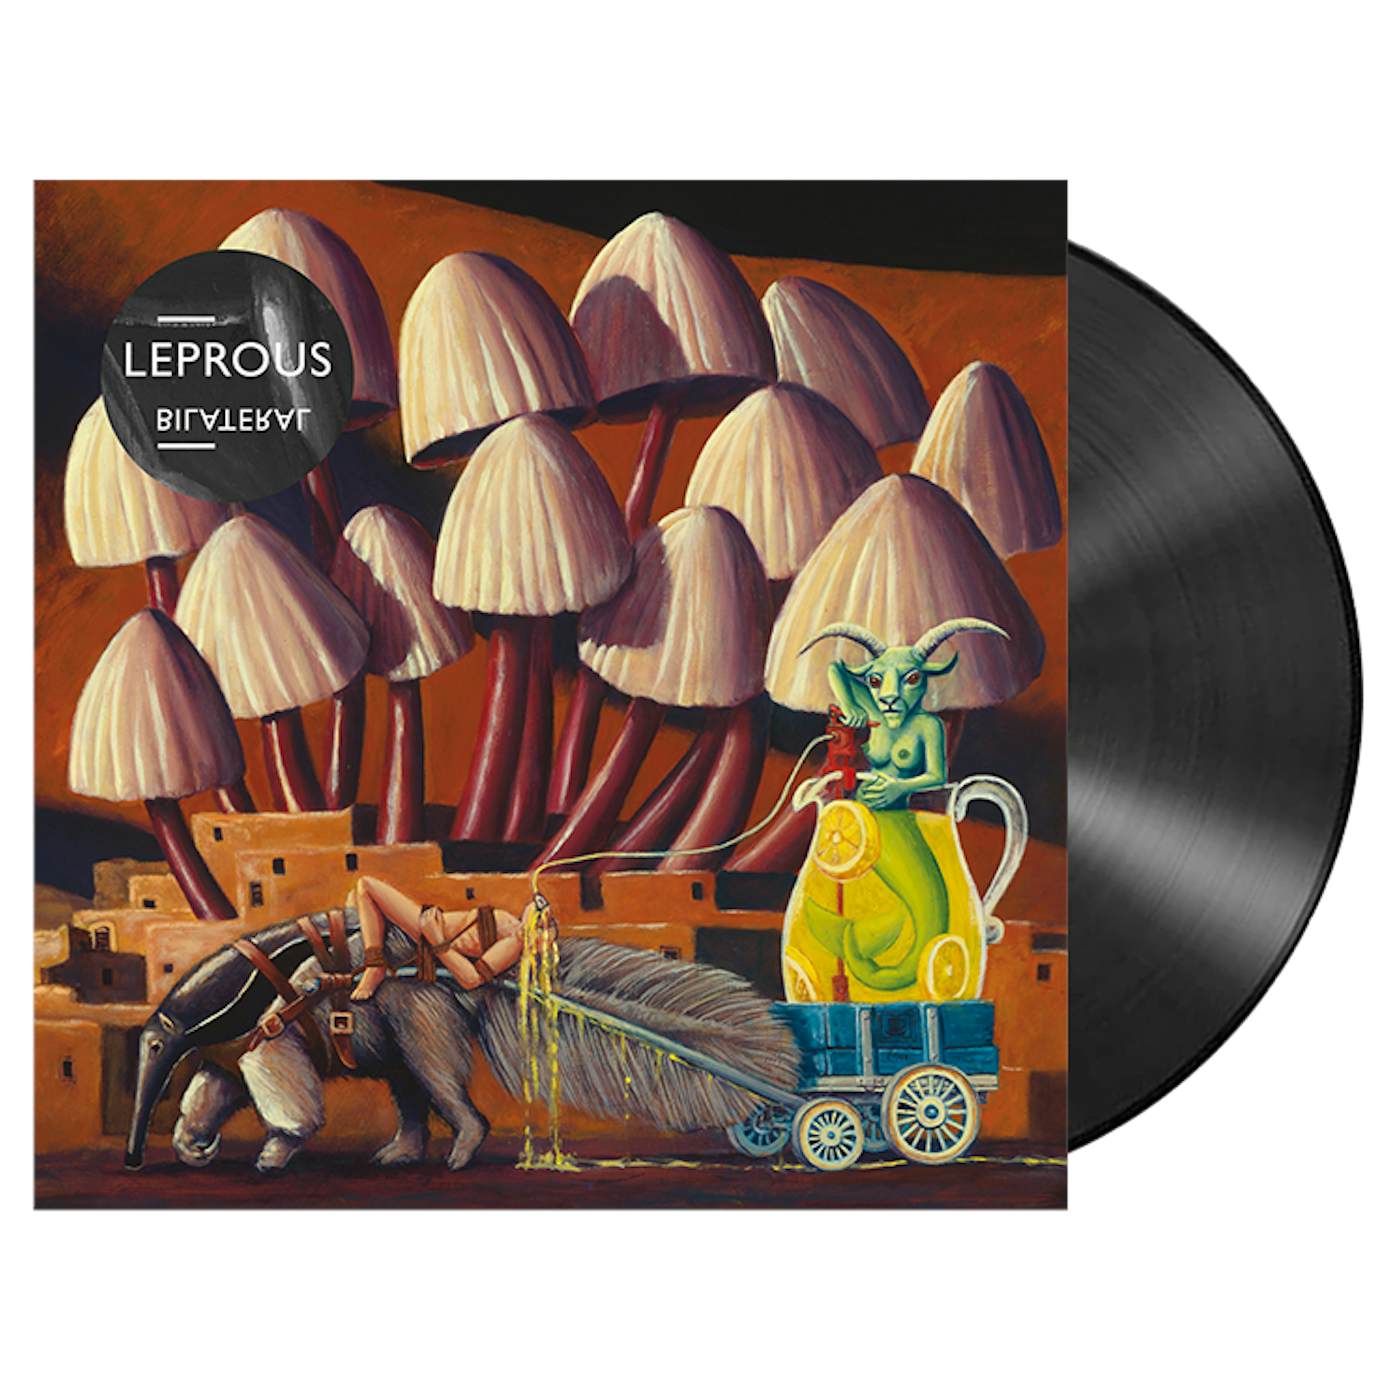 LEPROUS - 'Bilateral' 2xLP (Vinyl)